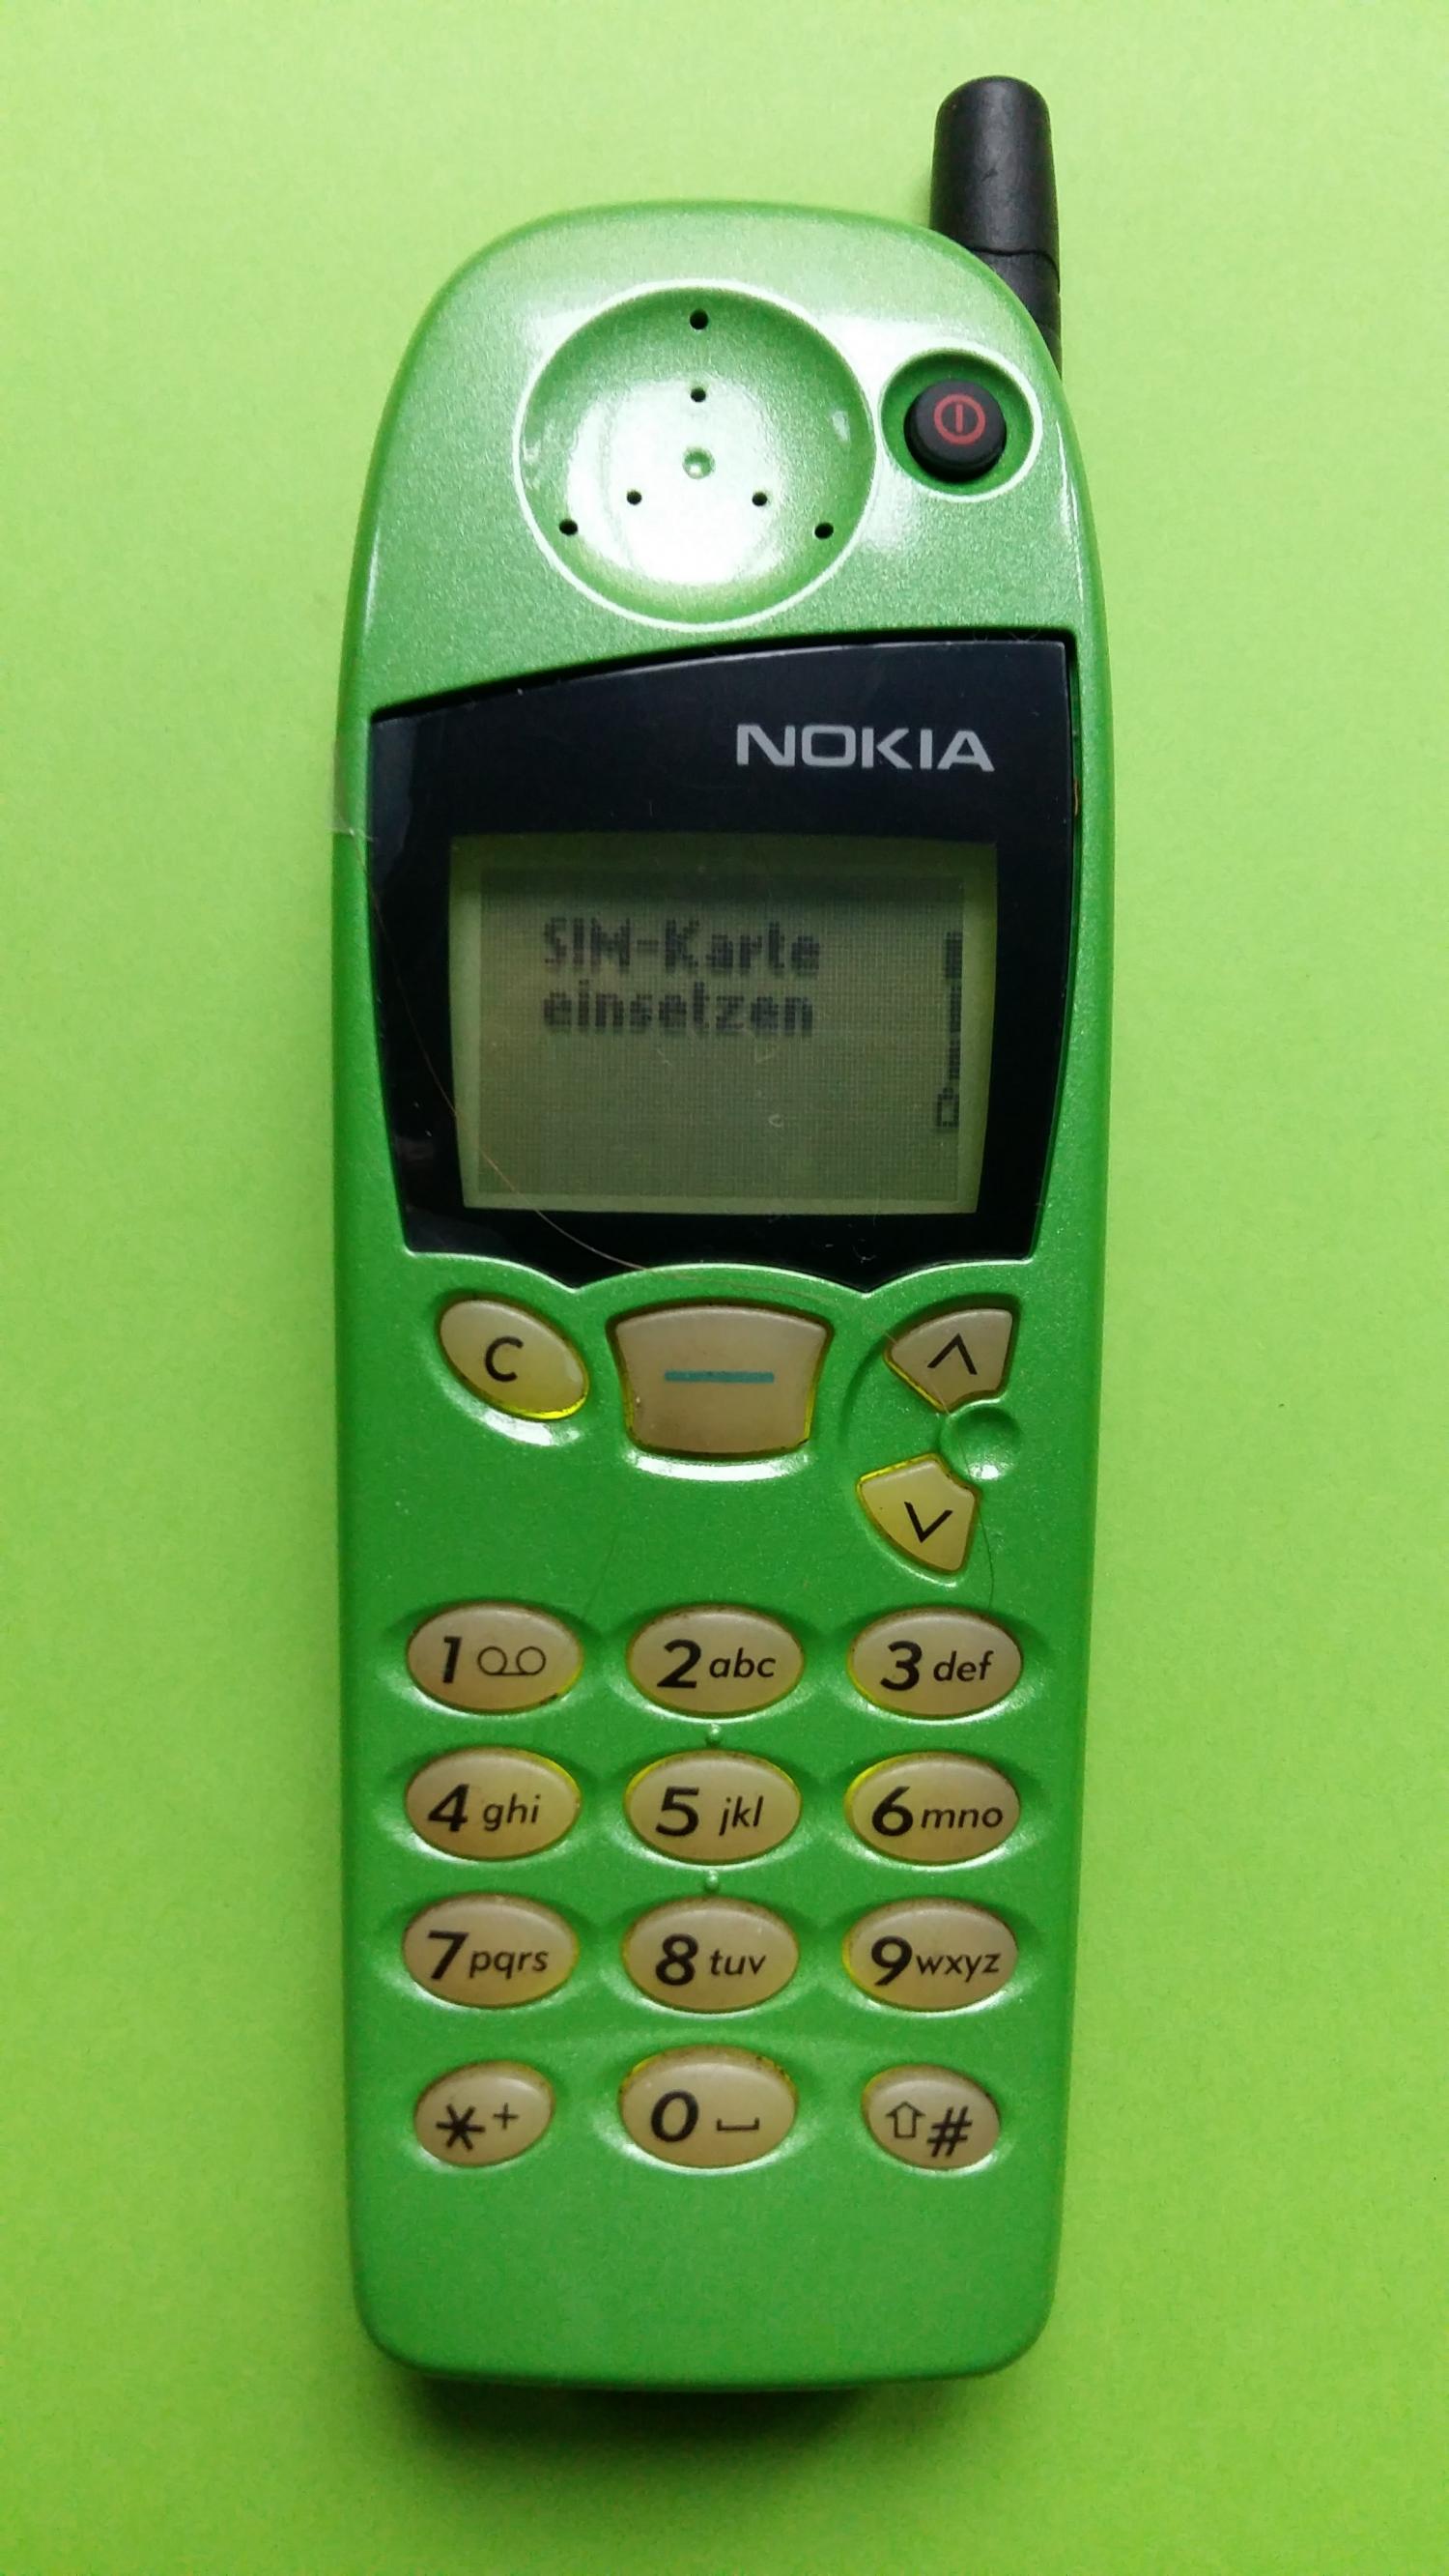 image-7304807-Nokia 5110 (6)1.jpg